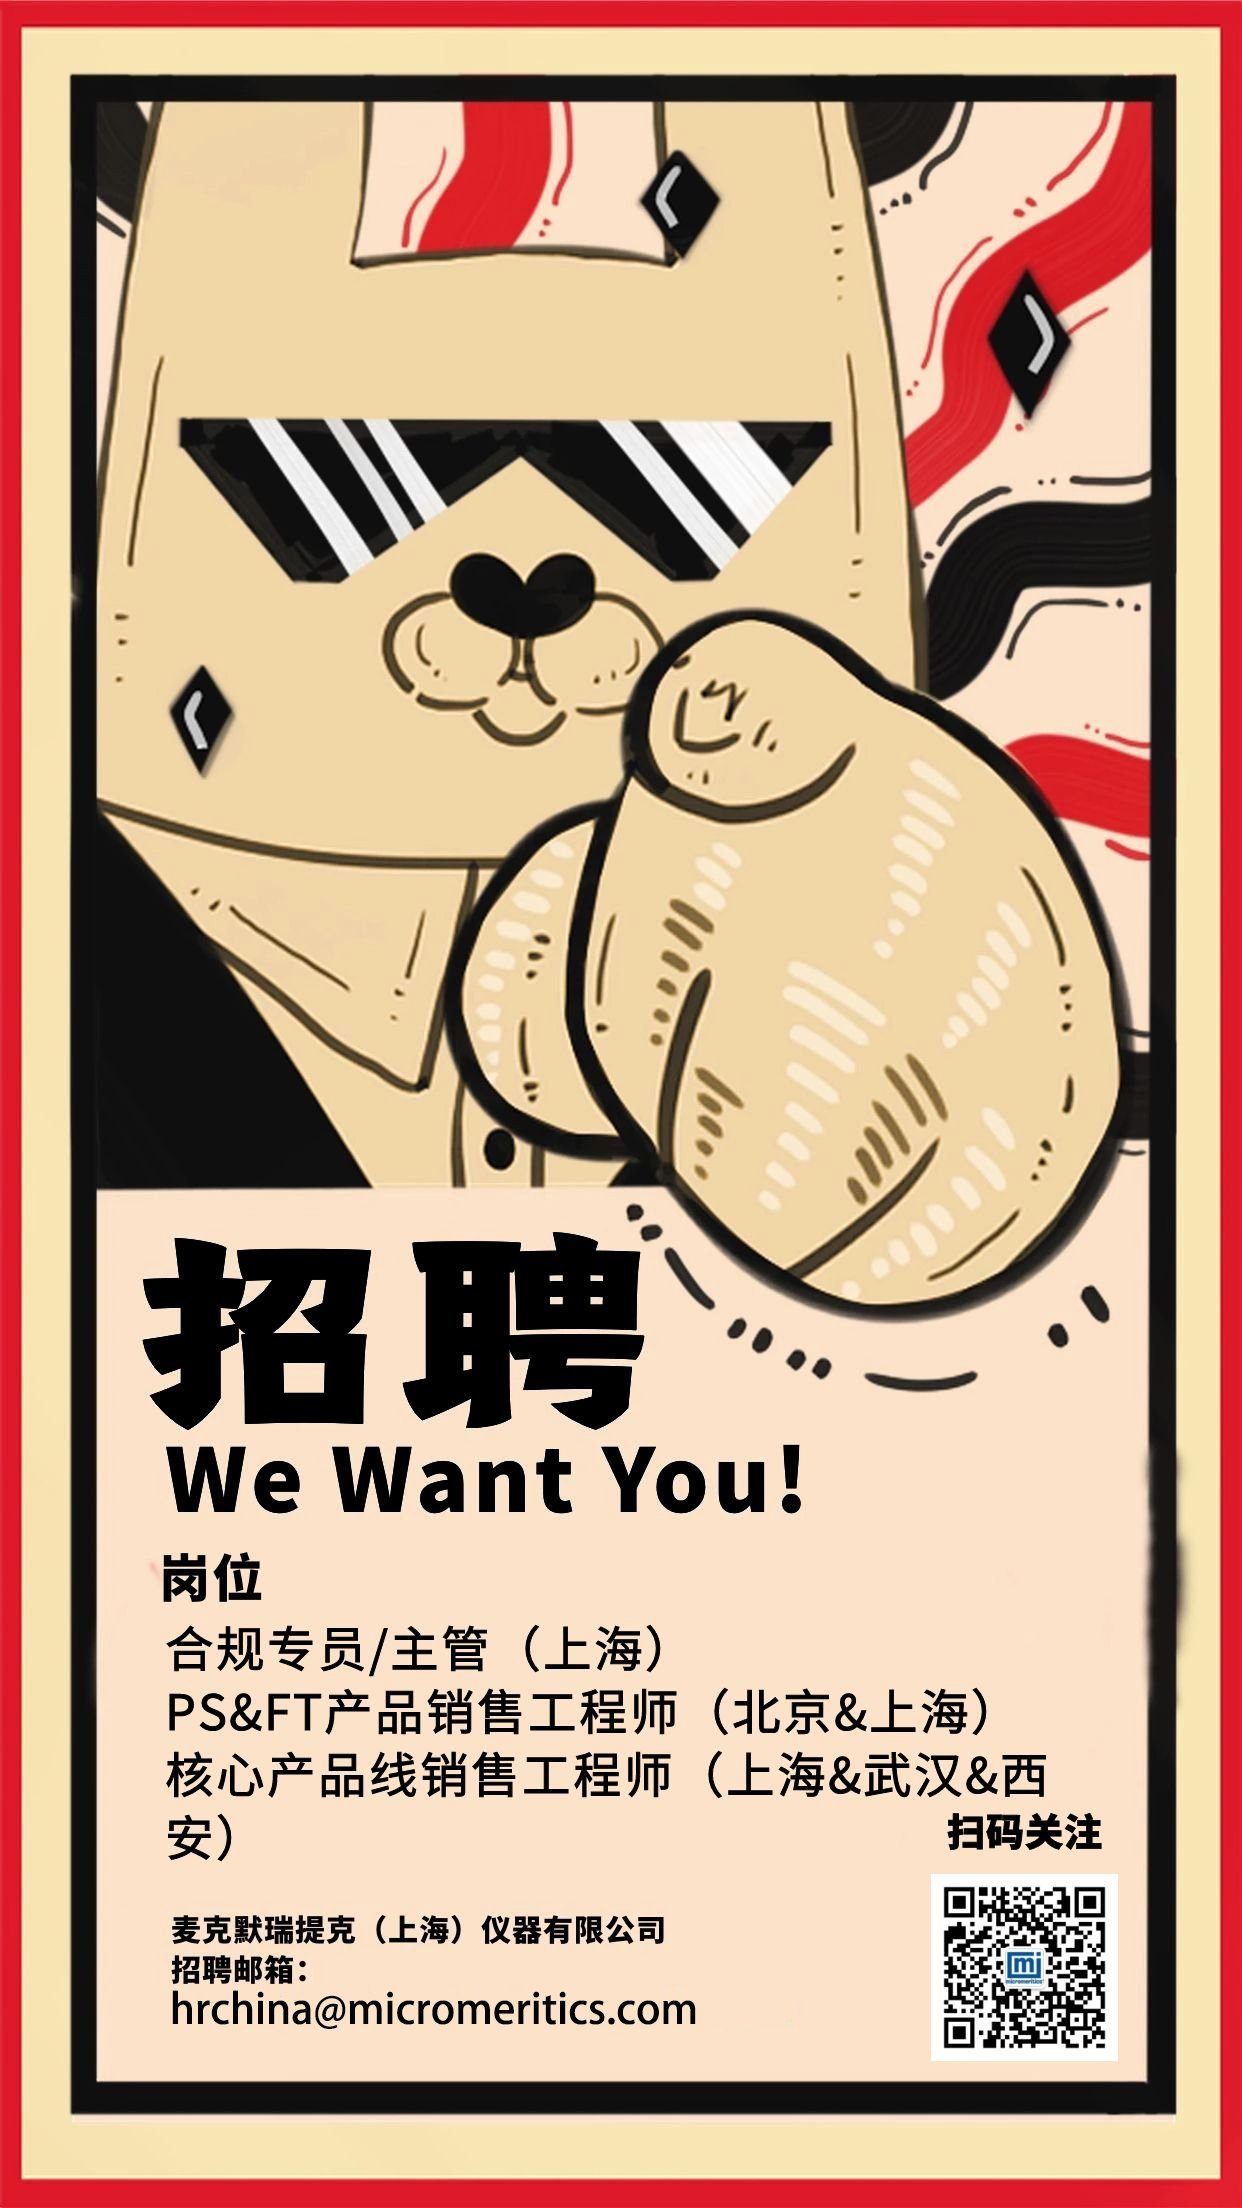 麦克招聘—we want you!